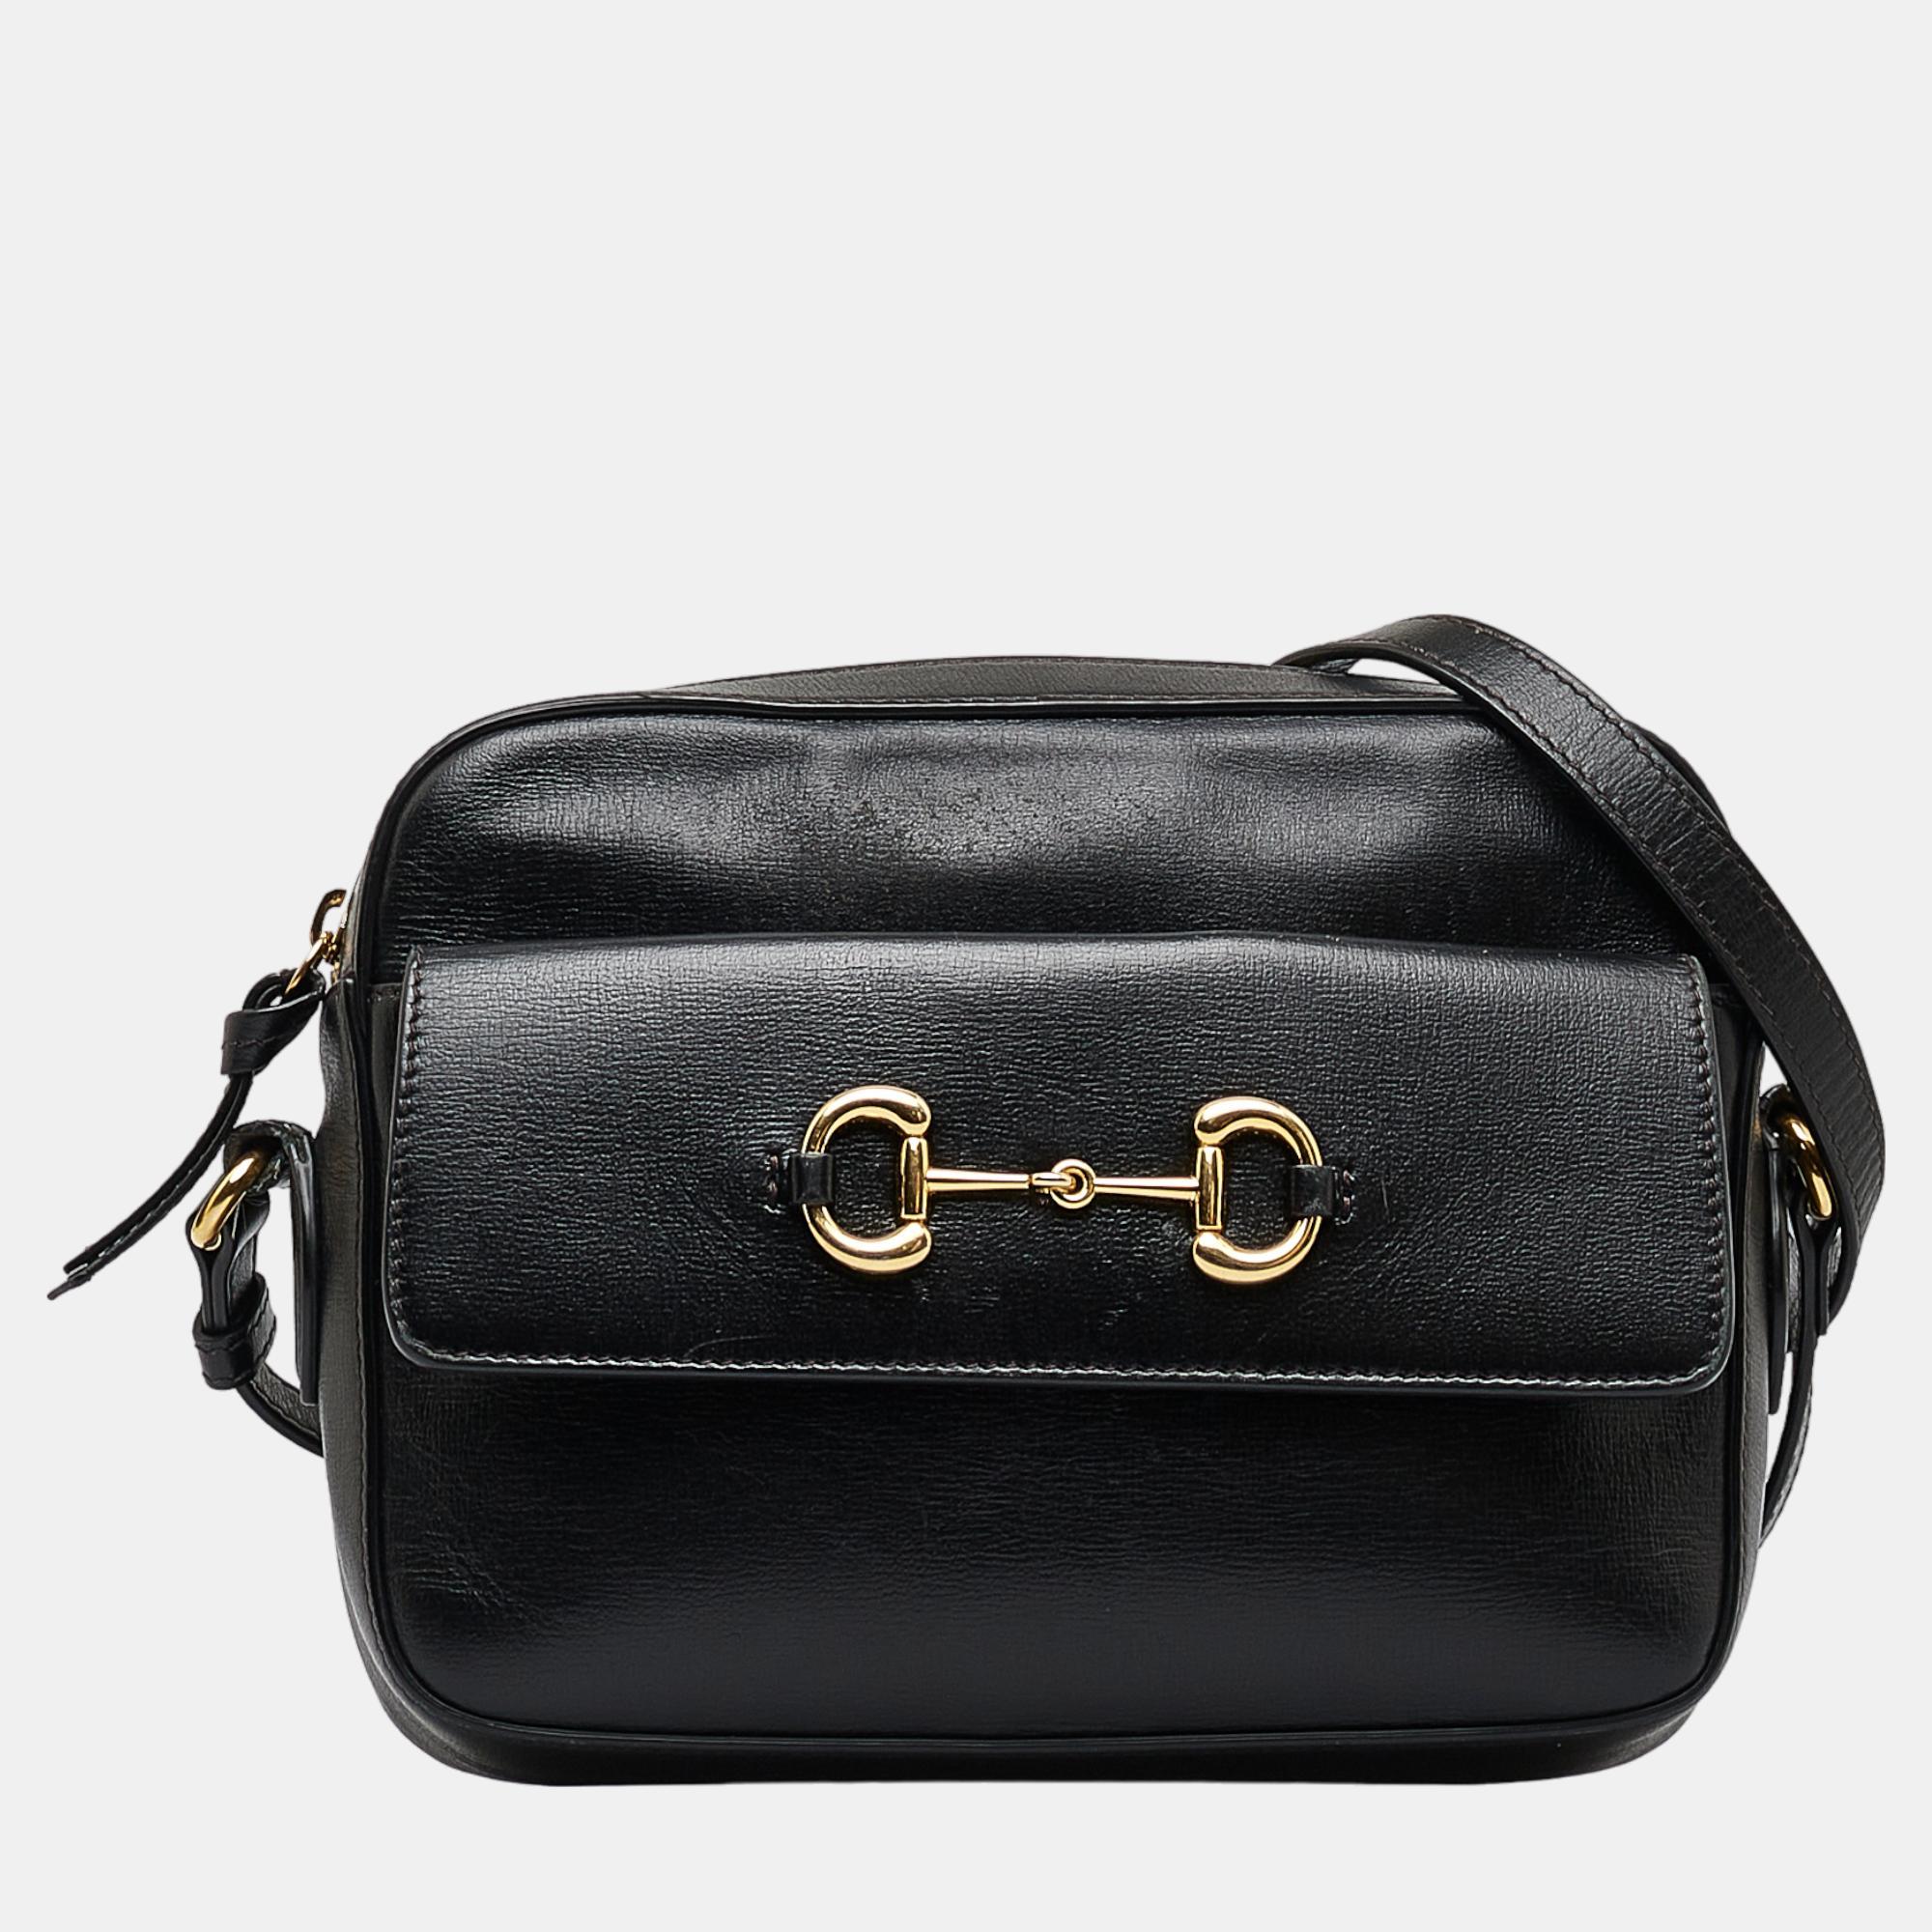 Gucci Black Horsebit 1955 Crossbody Bag